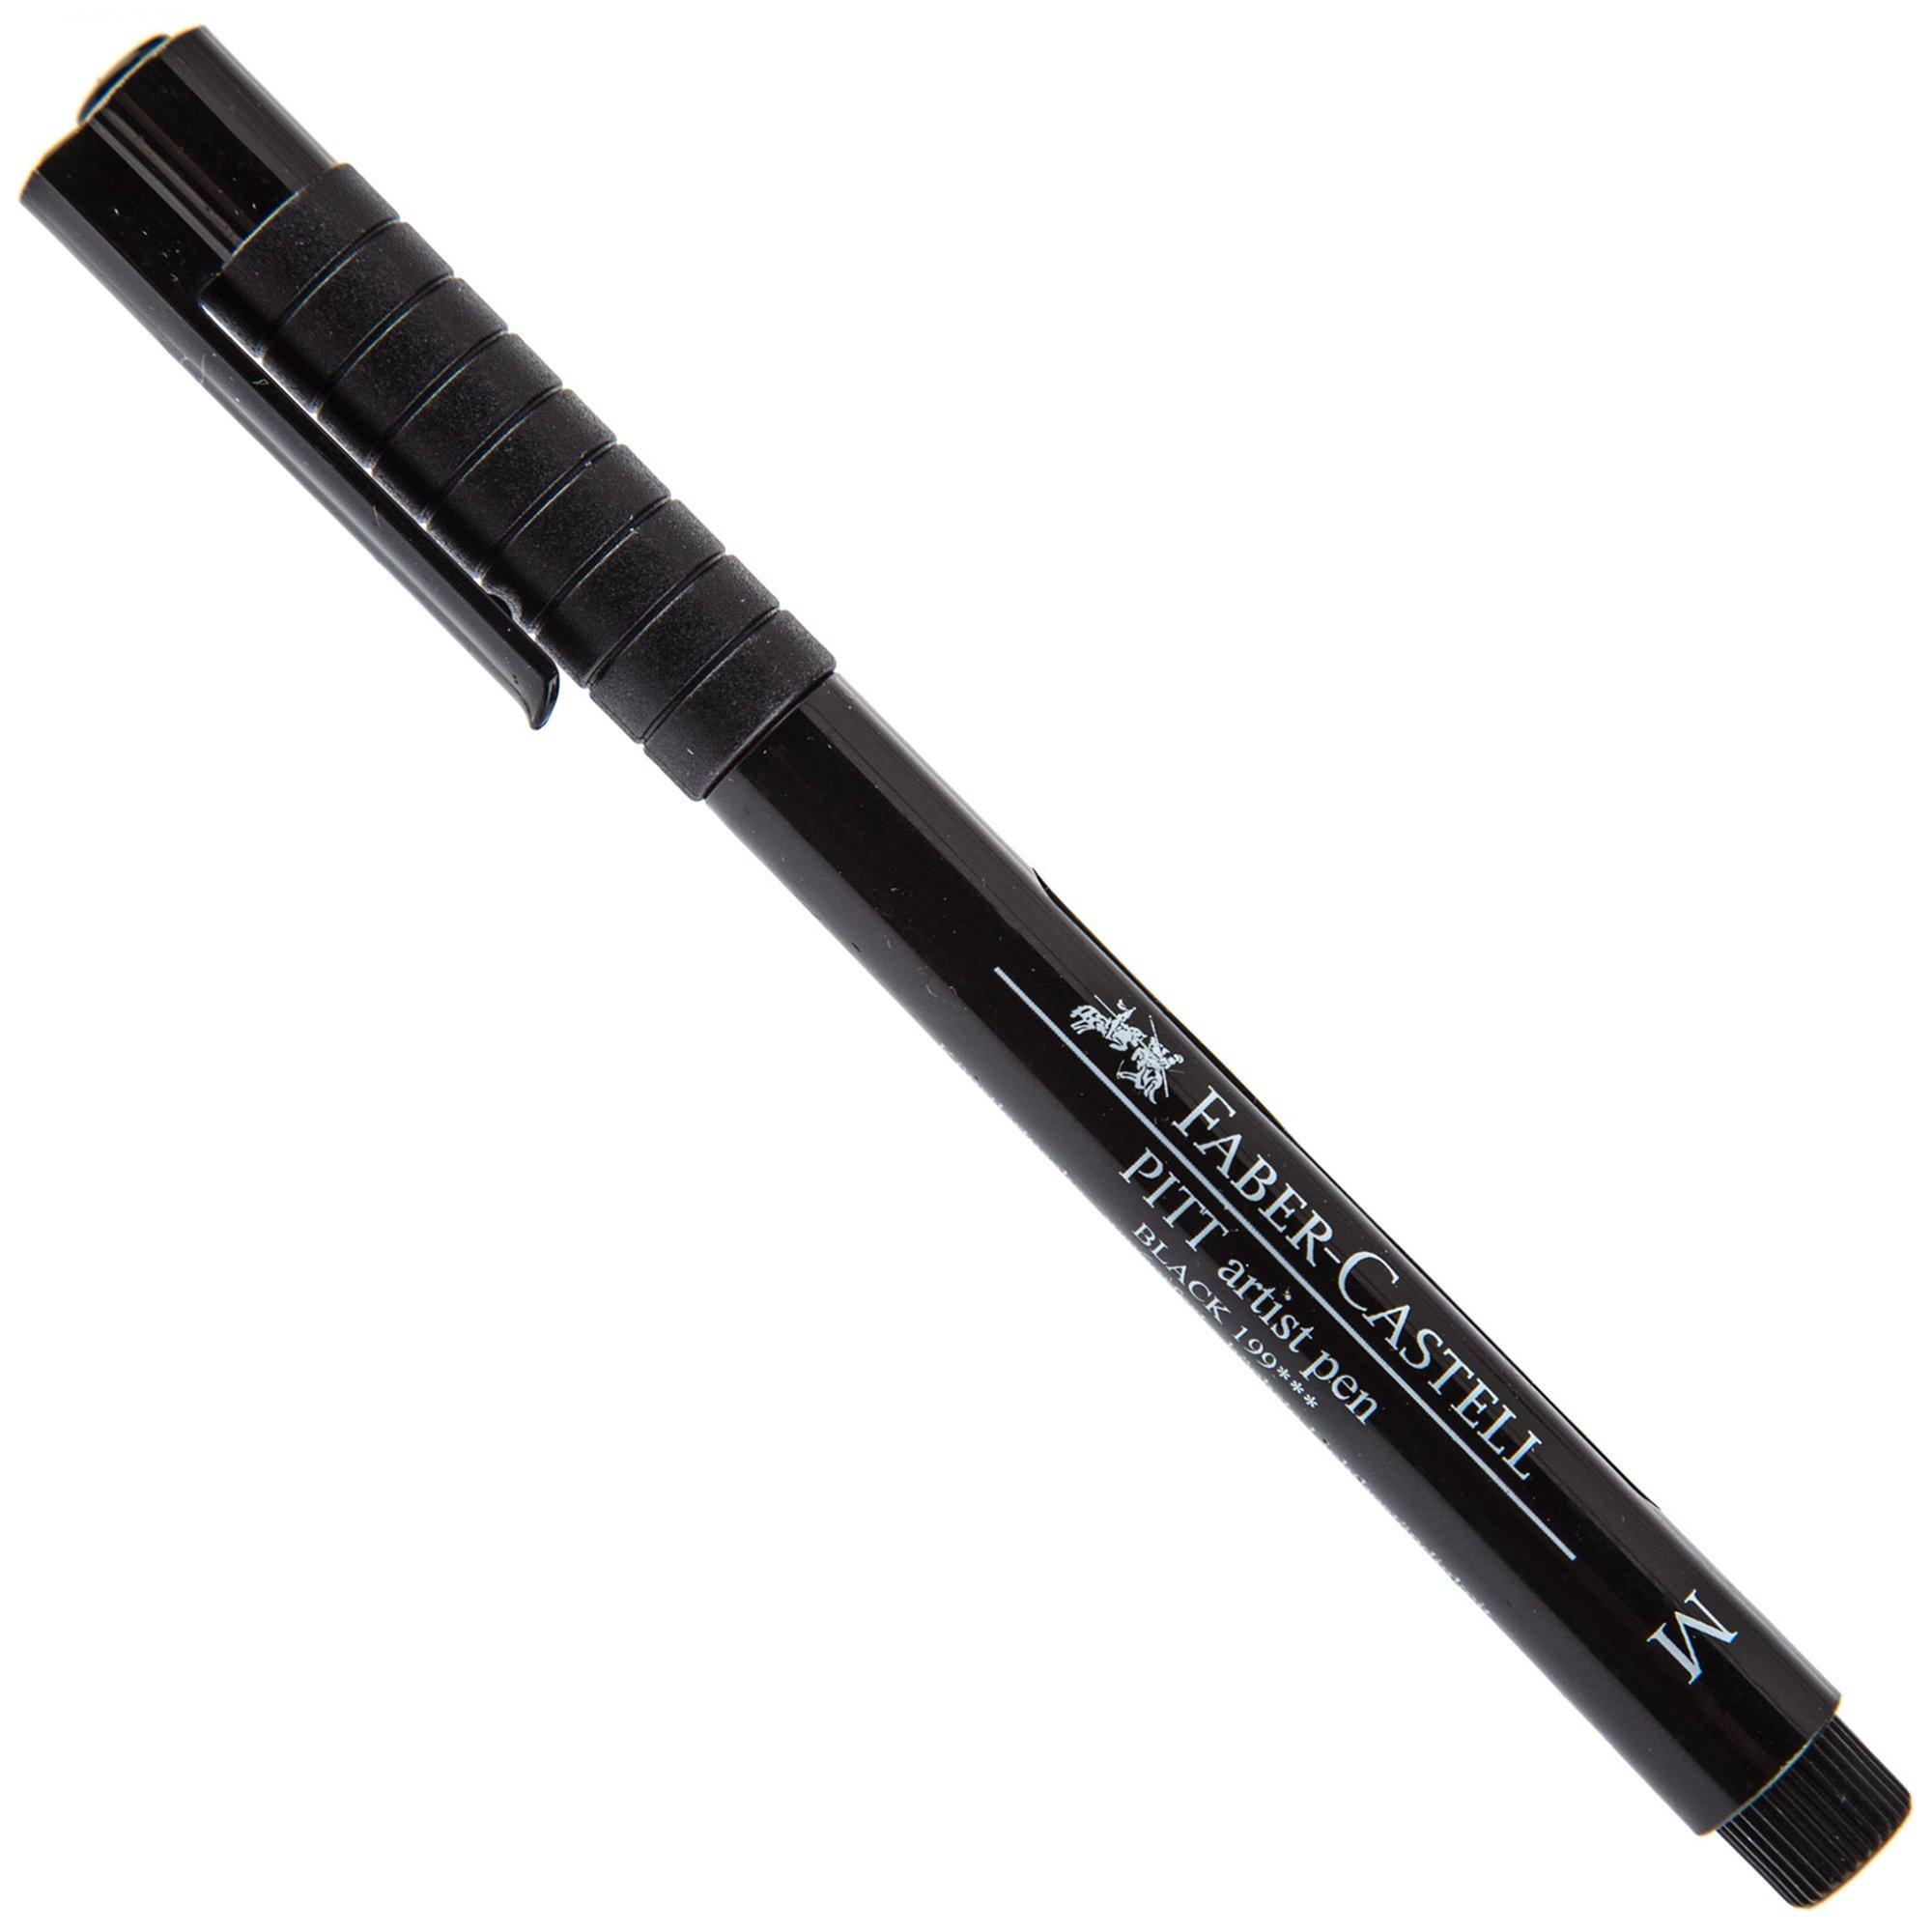 Black Faber-Castell PITT Artist Medium Pen - 0.7mm